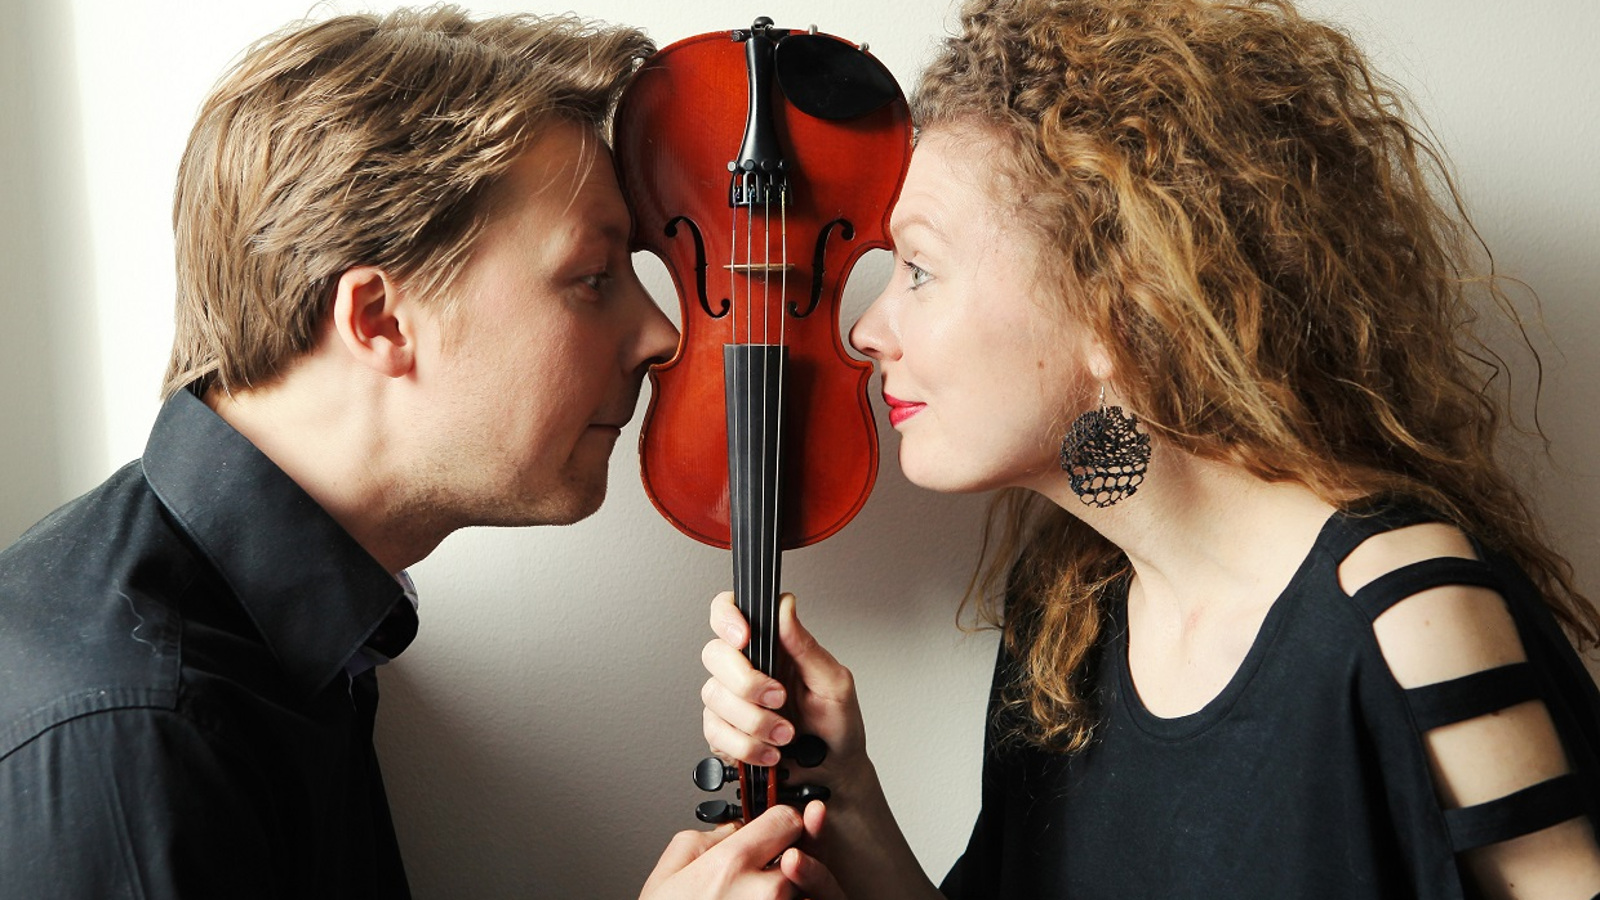 Kuvassa ovat Antti Tikkanen v. Takaa asemmalla ja Minna Pensola oikealla puolivartalokuvassa.  He pitävät välissään käsissään viulua varresta kiinni ylösalaisin.